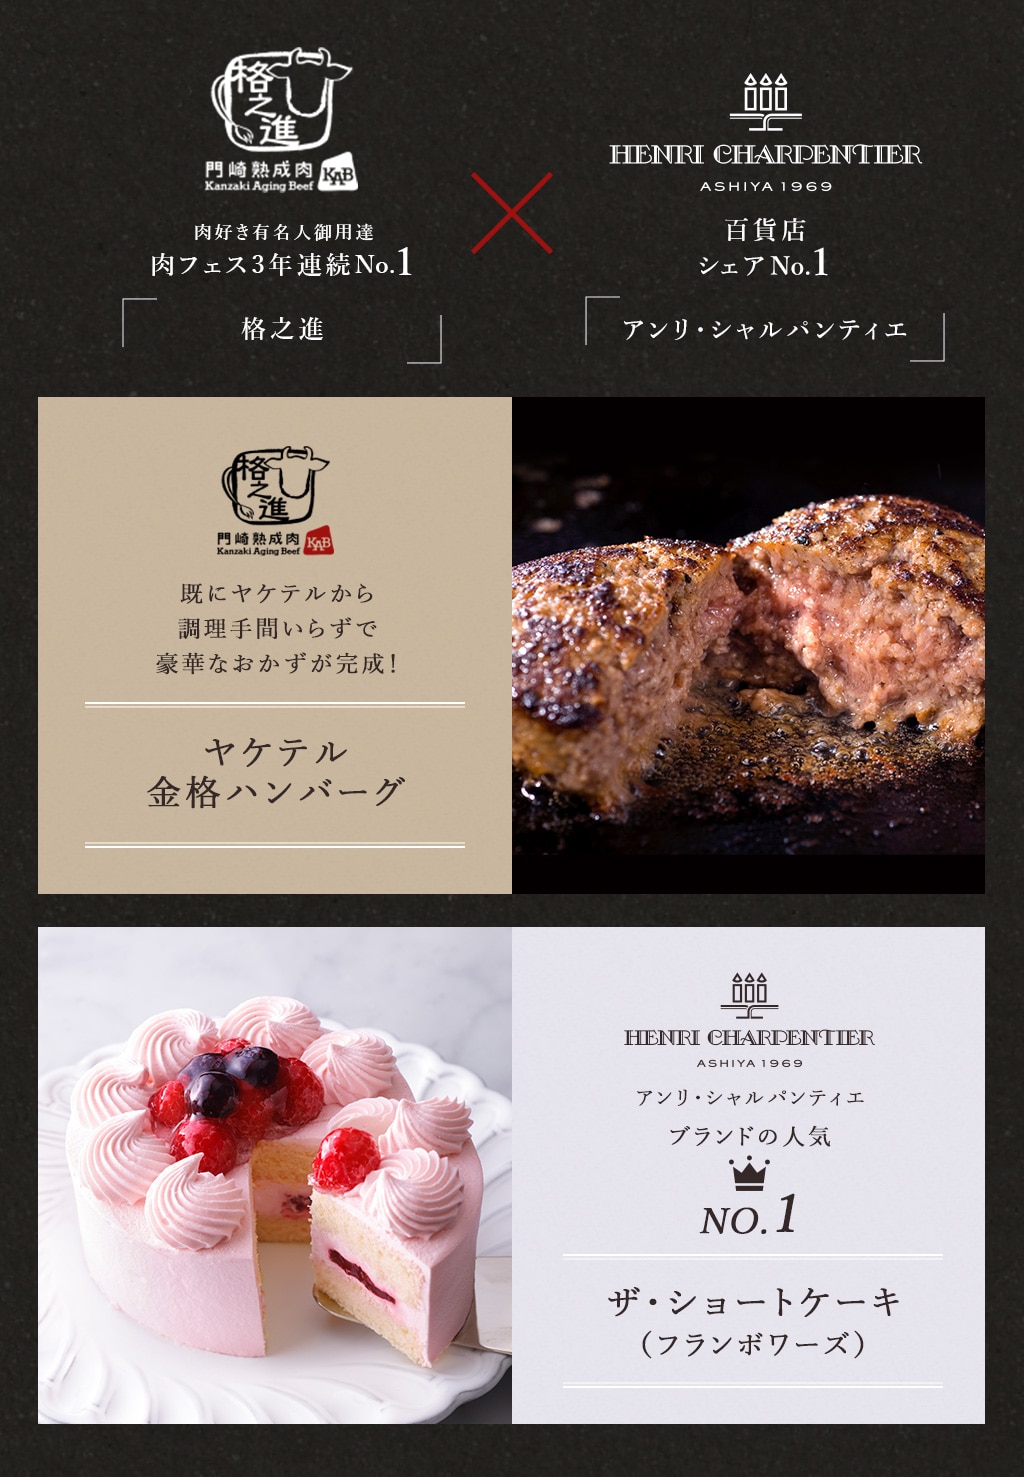 肉好き有名人御用達 肉フェス3年連続No.1 百貨店シェアNo.1 アンリ・シャルパンティエ